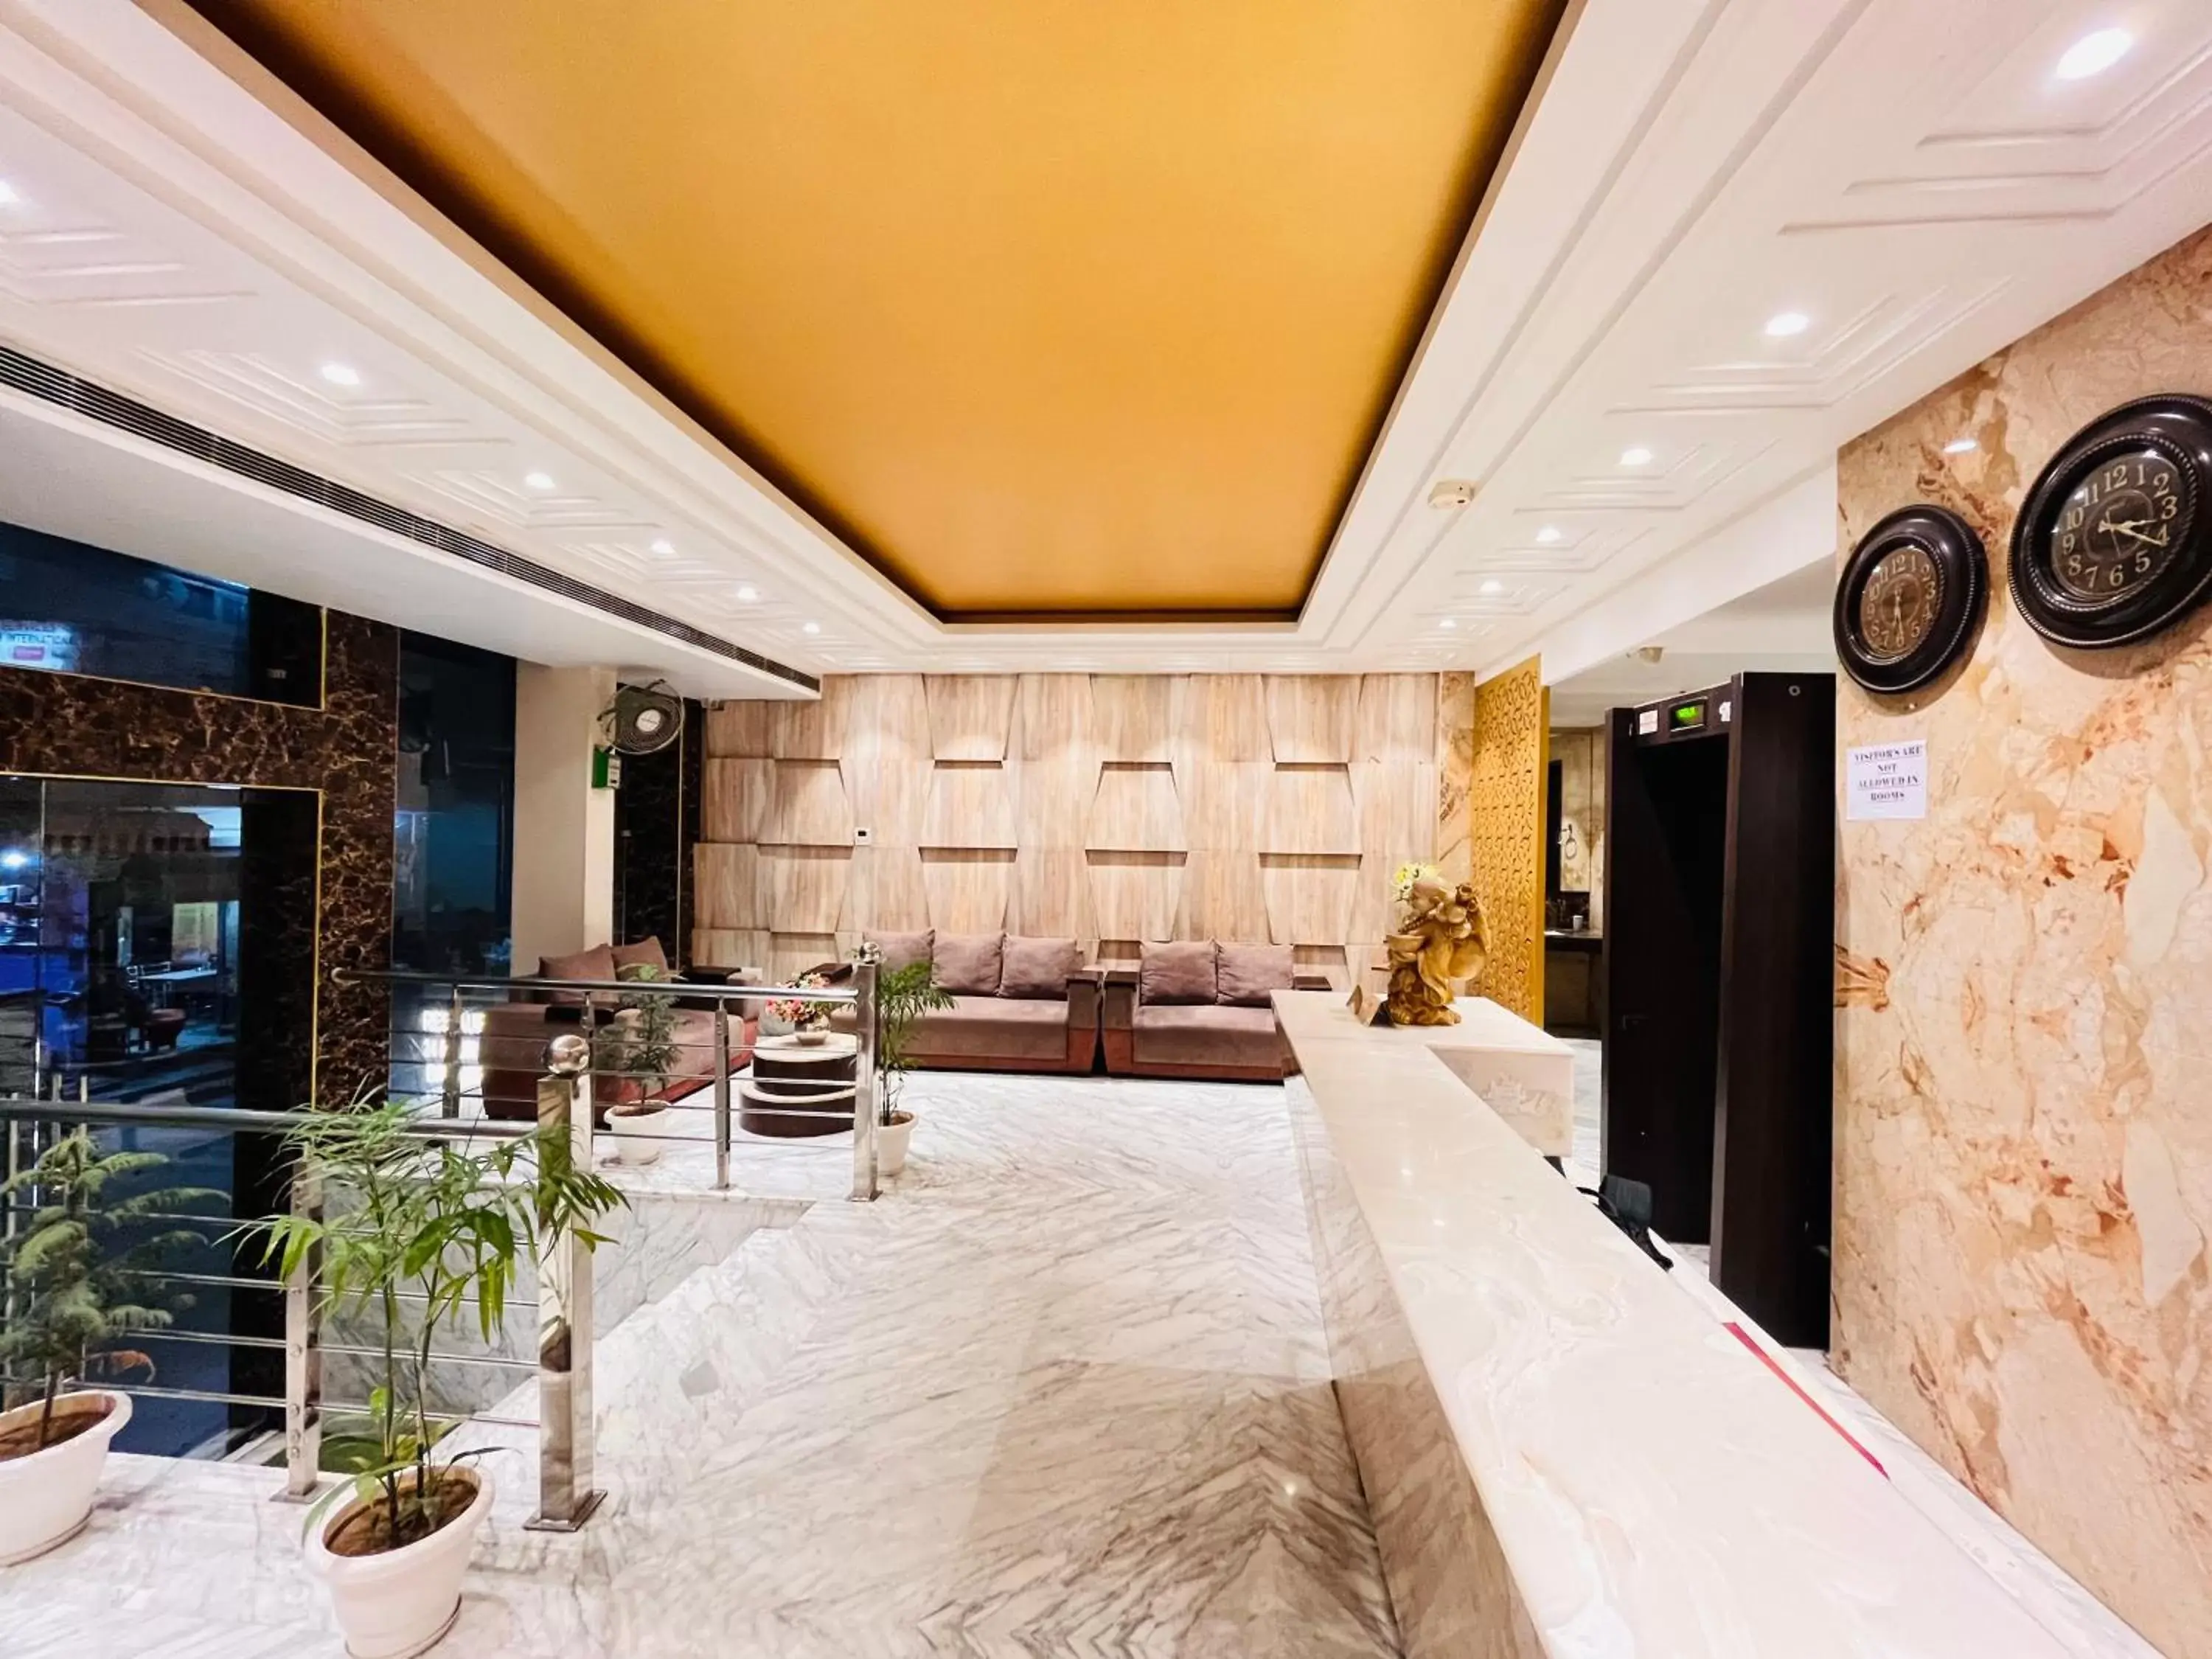 Lobby or reception in Hotel Banz - Near Delhi International Airport